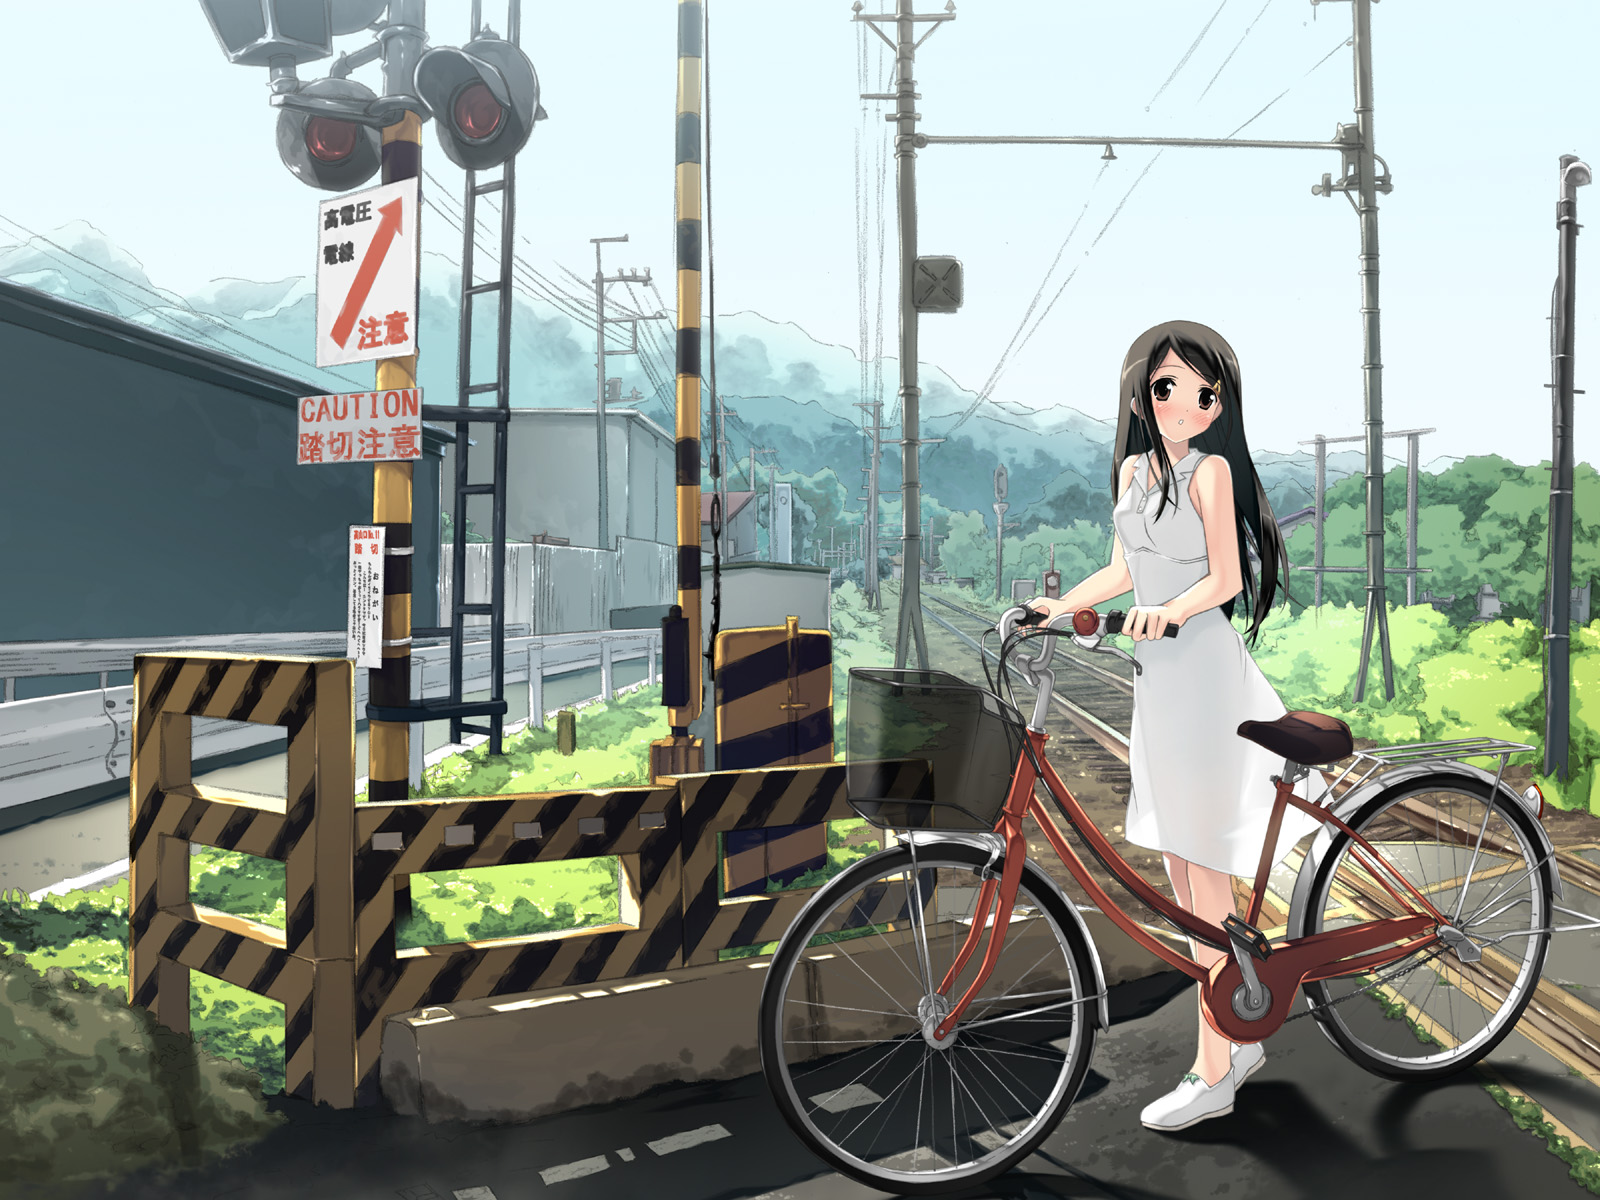 Fondos de Pantalla Bicicleta Anime descargar imagenes